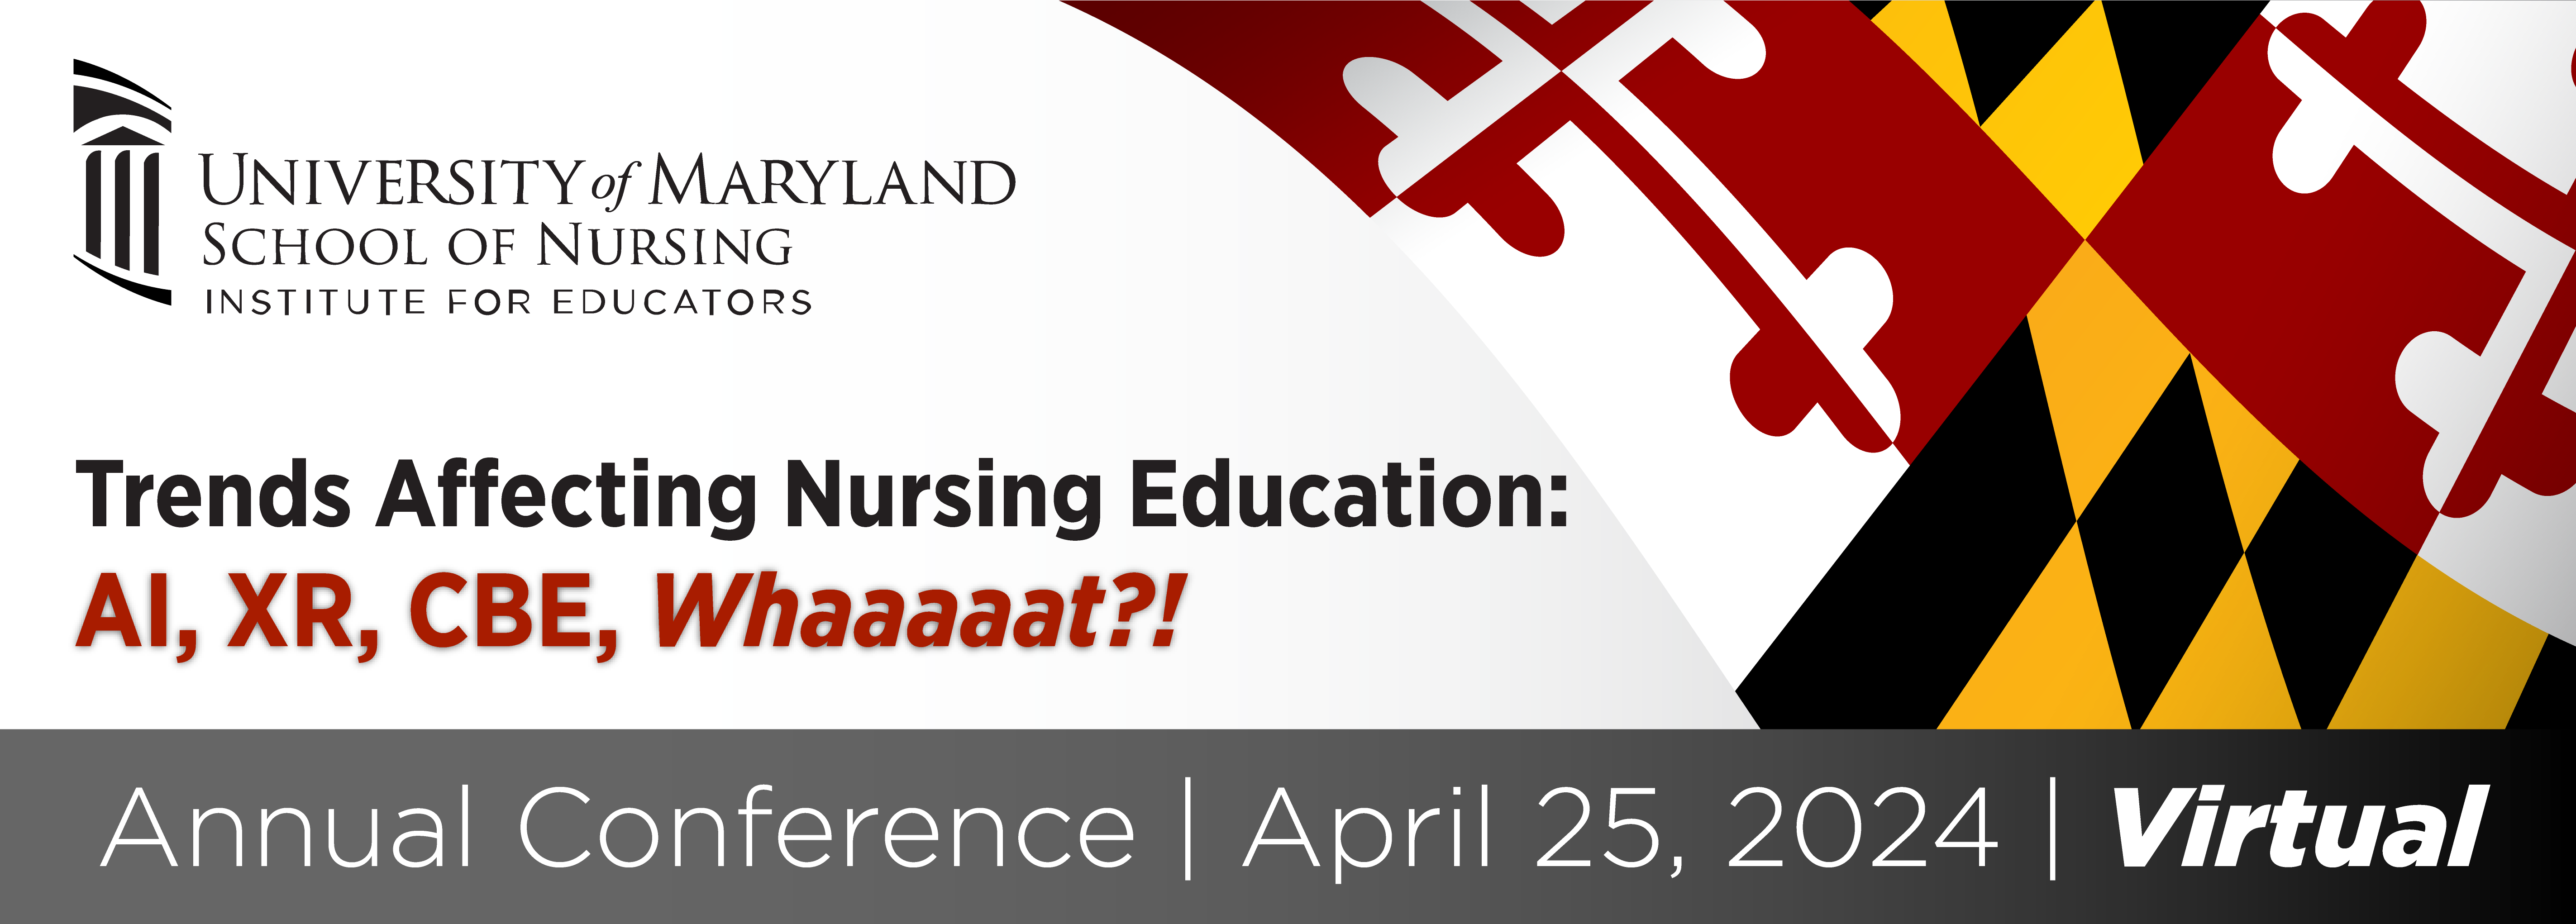 Trends Affecting Nursing Education: AI, XR, CBE, Whaaaaat?!